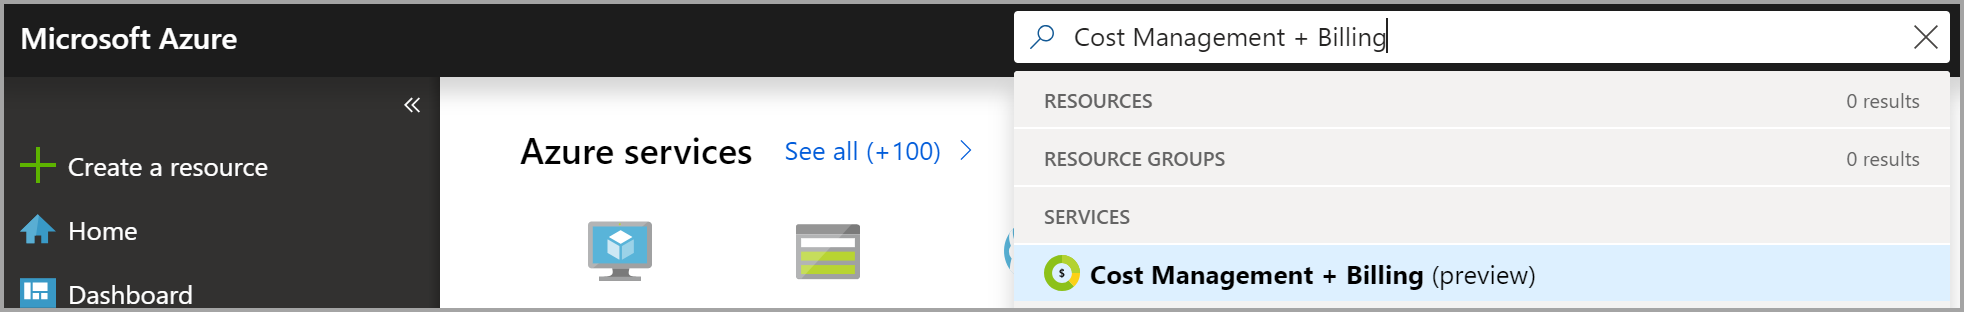 Schermopname van zoekopdracht in Azure Portal naar kostenbeheer en facturering om eigendom van facturering aan te vragen.